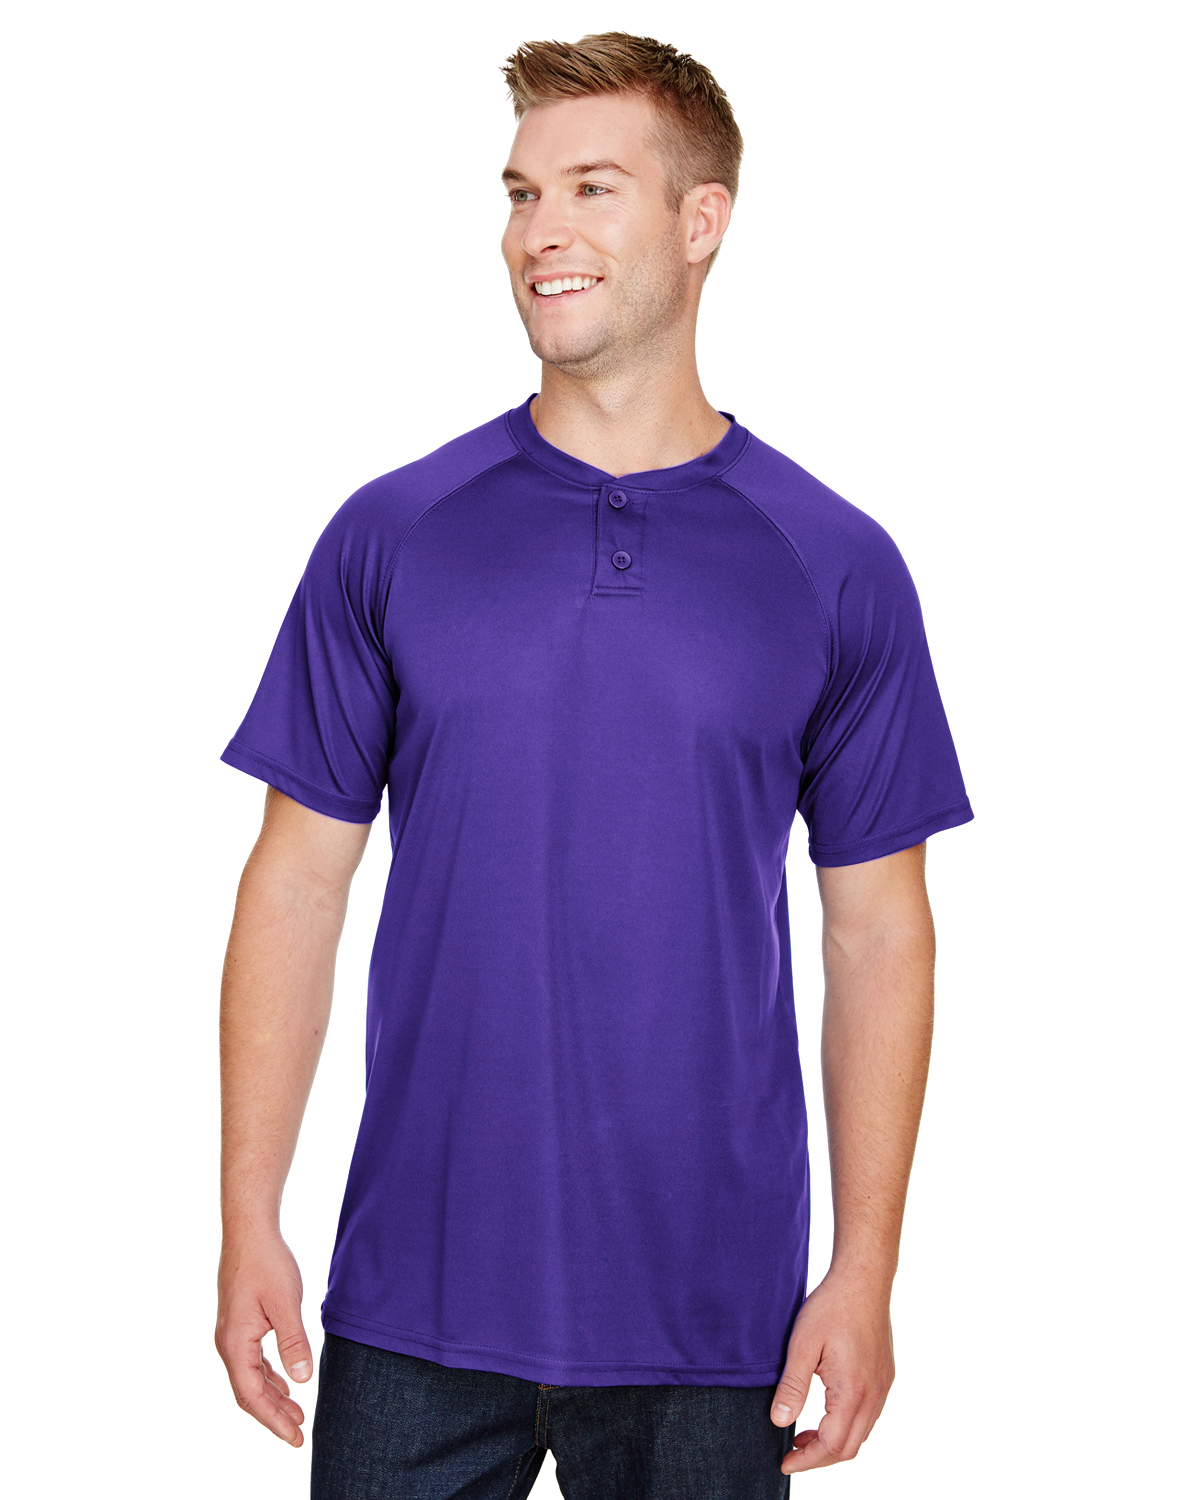 purple baseball shirts